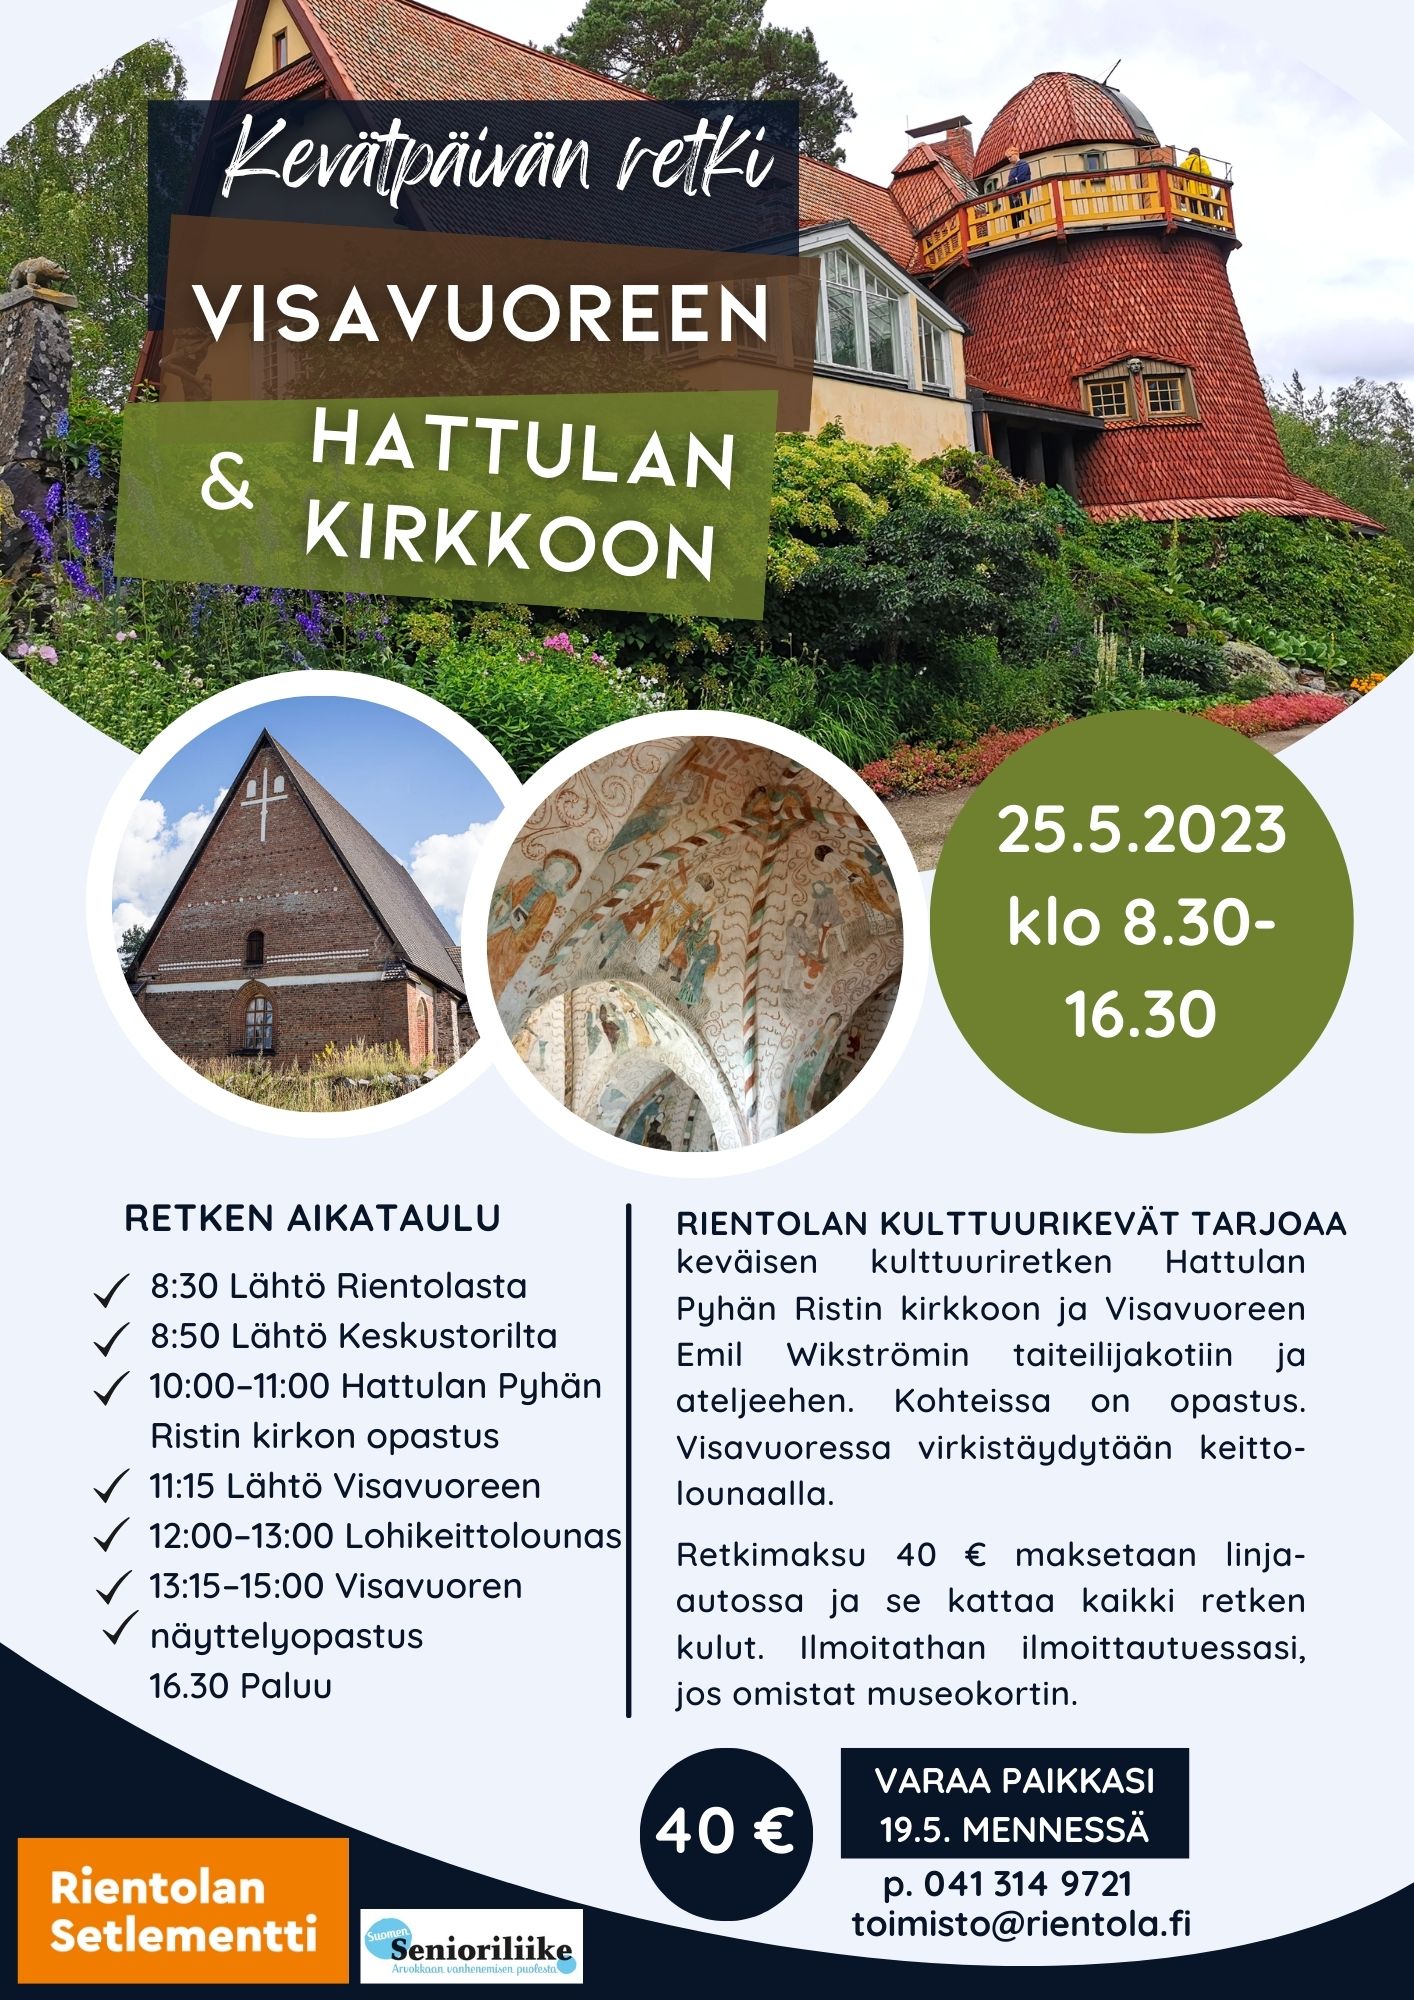 Rientolan Kulttuurikevät esittää: Retki Hattulan vanhalle kirkolle ja Visavuoreen